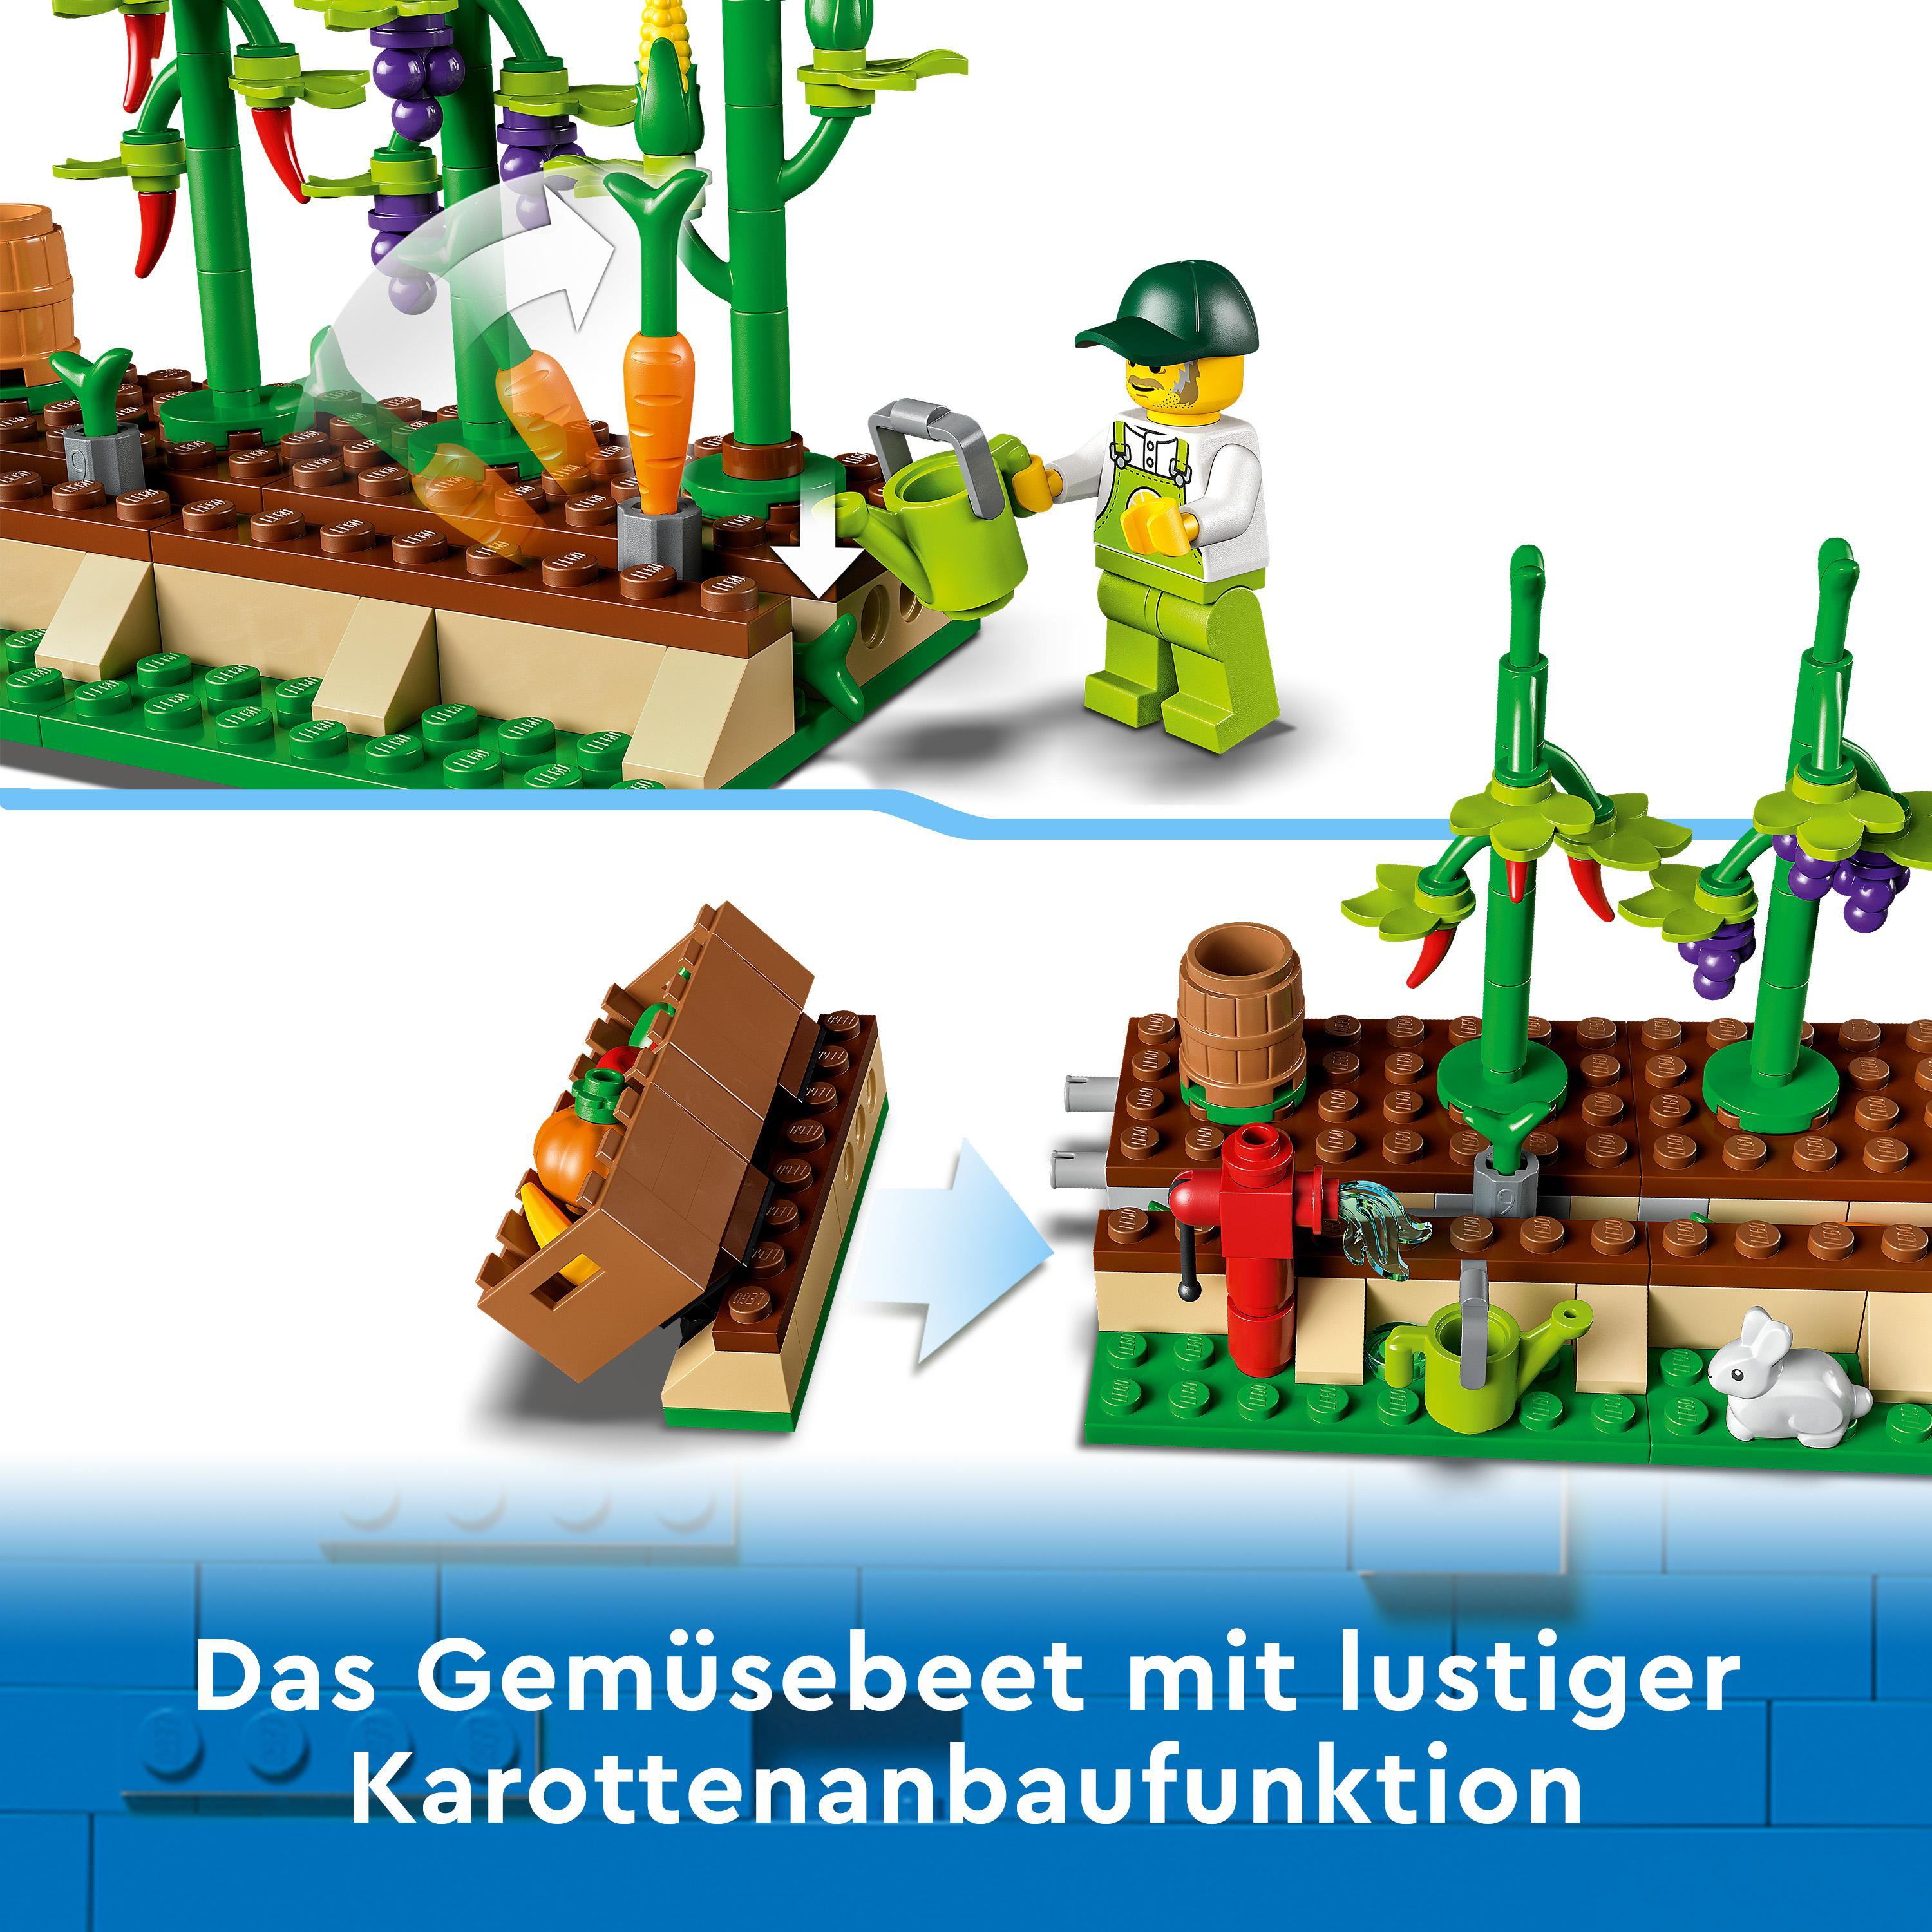 LEGO 60345 Mehrfarbig Bausatz, Gemüse-Lieferwagen City